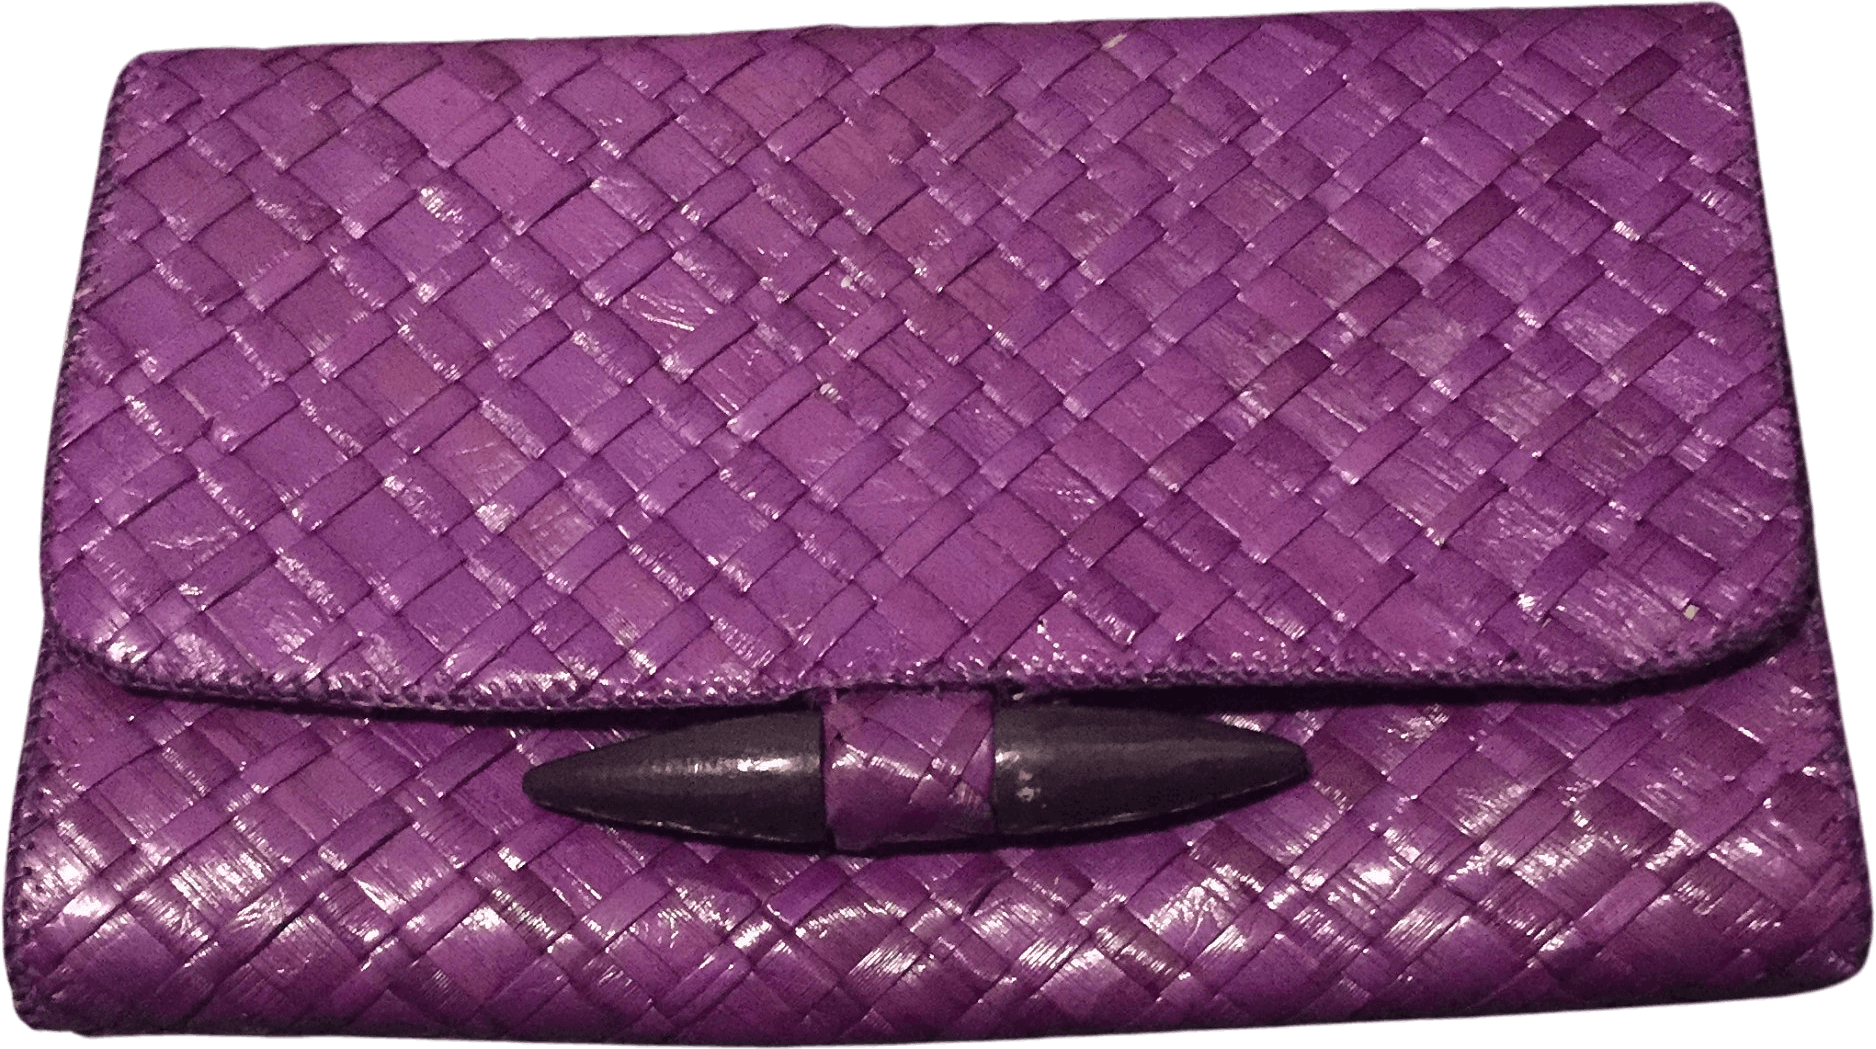 Vintage Purple Wicker Clutch by Vanessa | Shop THRILLING